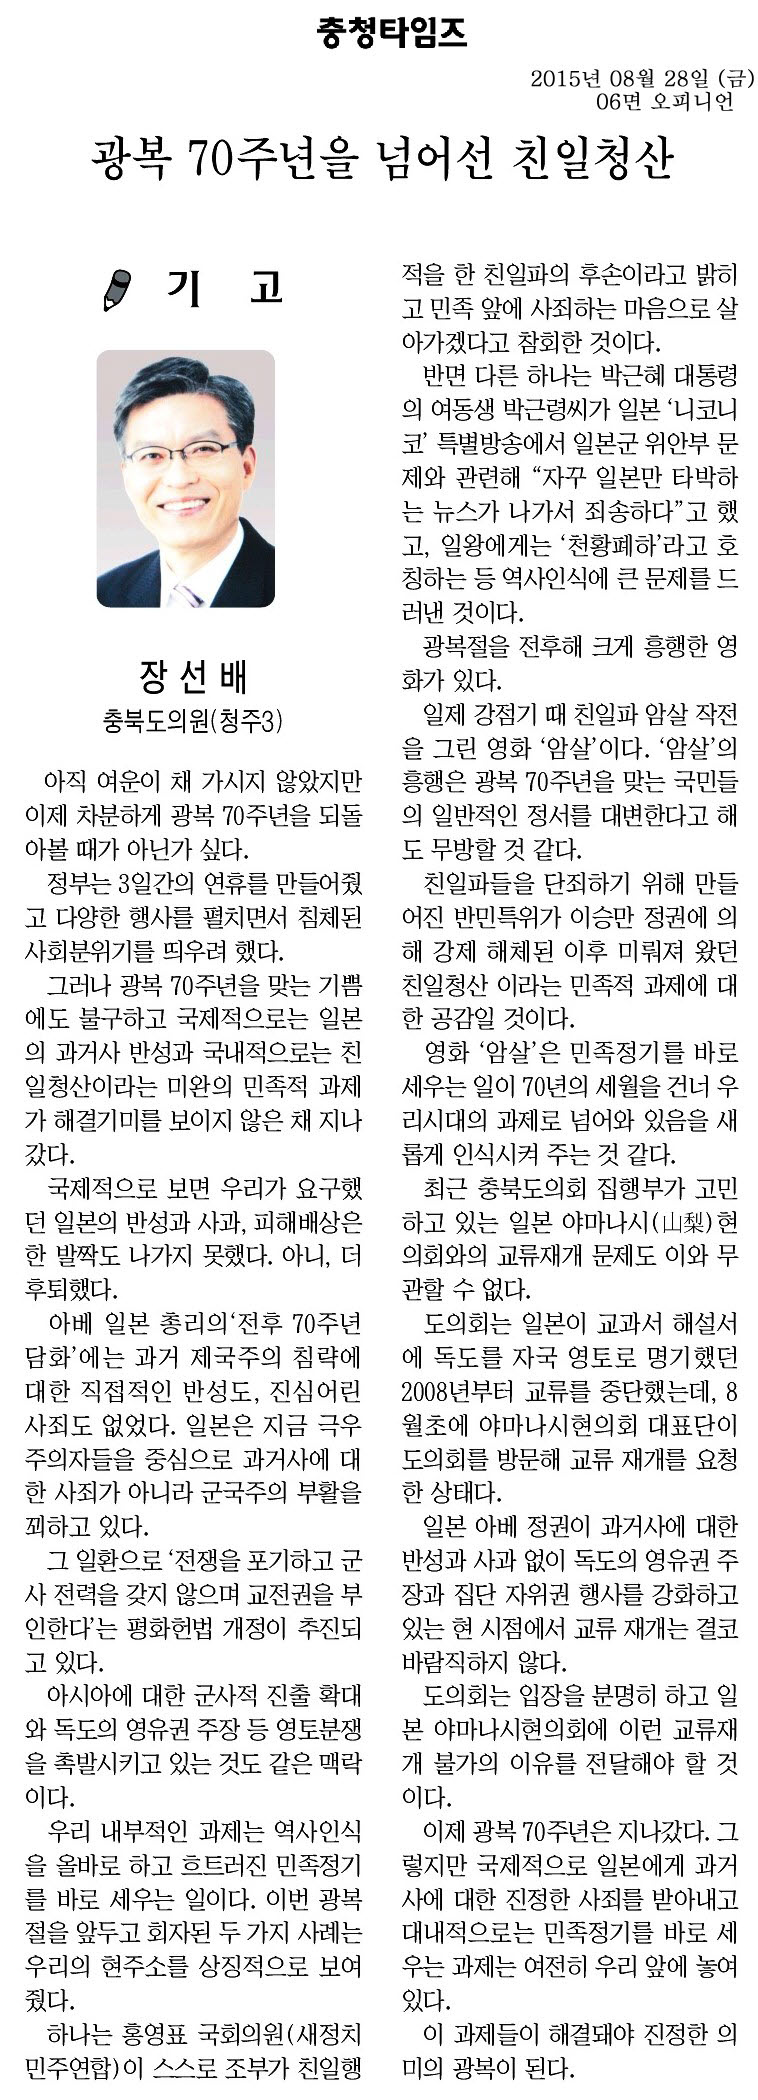 광복 70주년을 넘어선 친일청산(장선배 의원, 충청타임즈, 2015년 8월 28일) - 1